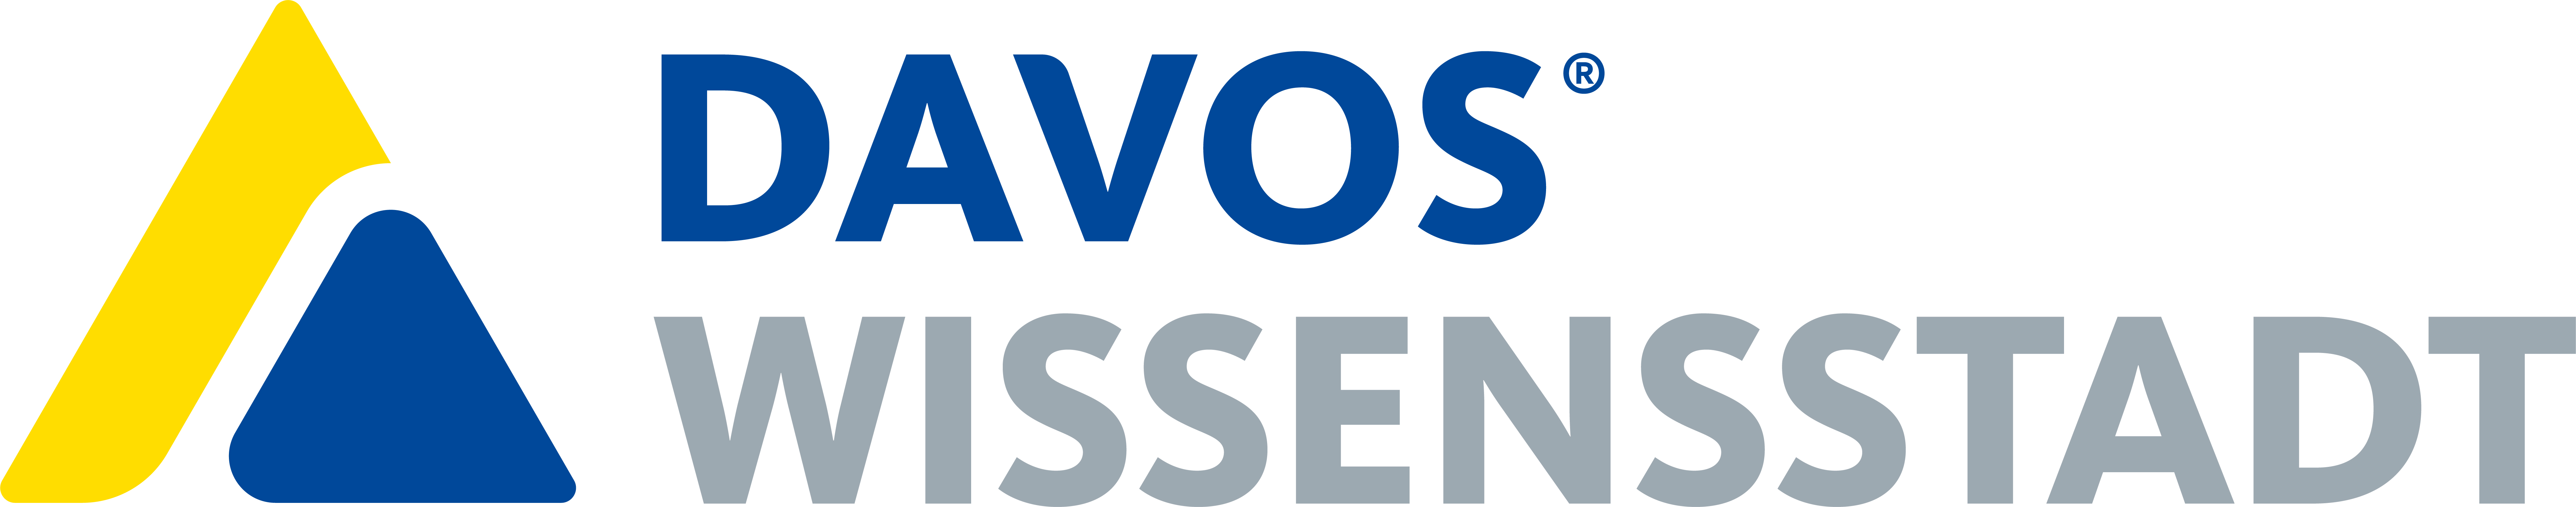 Logo - Wissensstadt Davos